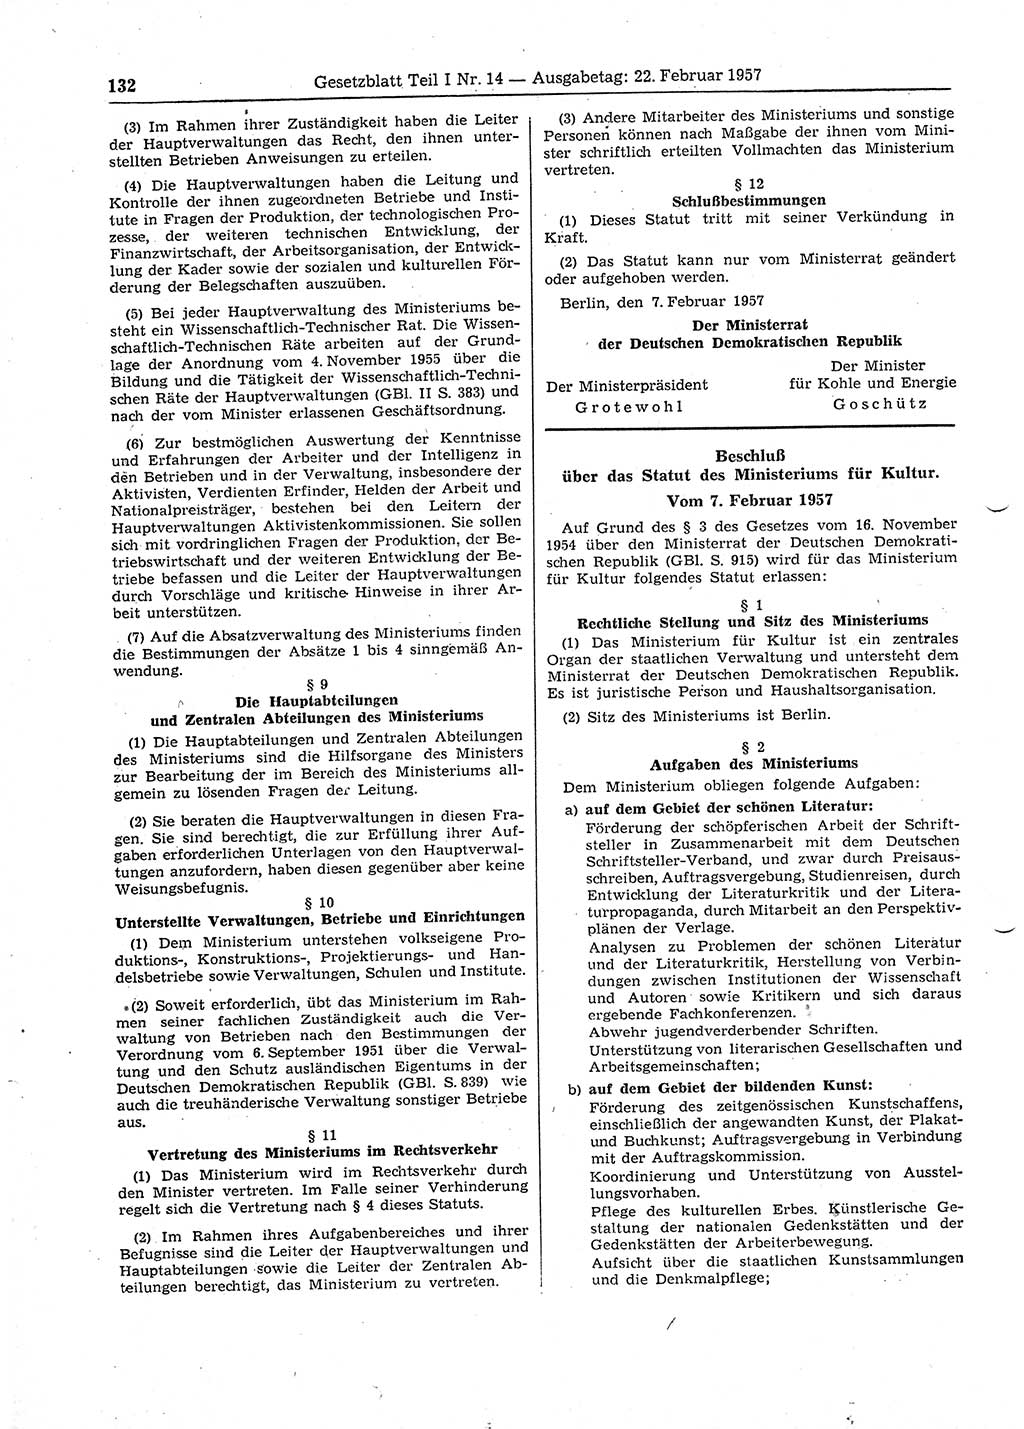 Gesetzblatt (GBl.) der Deutschen Demokratischen Republik (DDR) Teil Ⅰ 1957, Seite 132 (GBl. DDR Ⅰ 1957, S. 132)